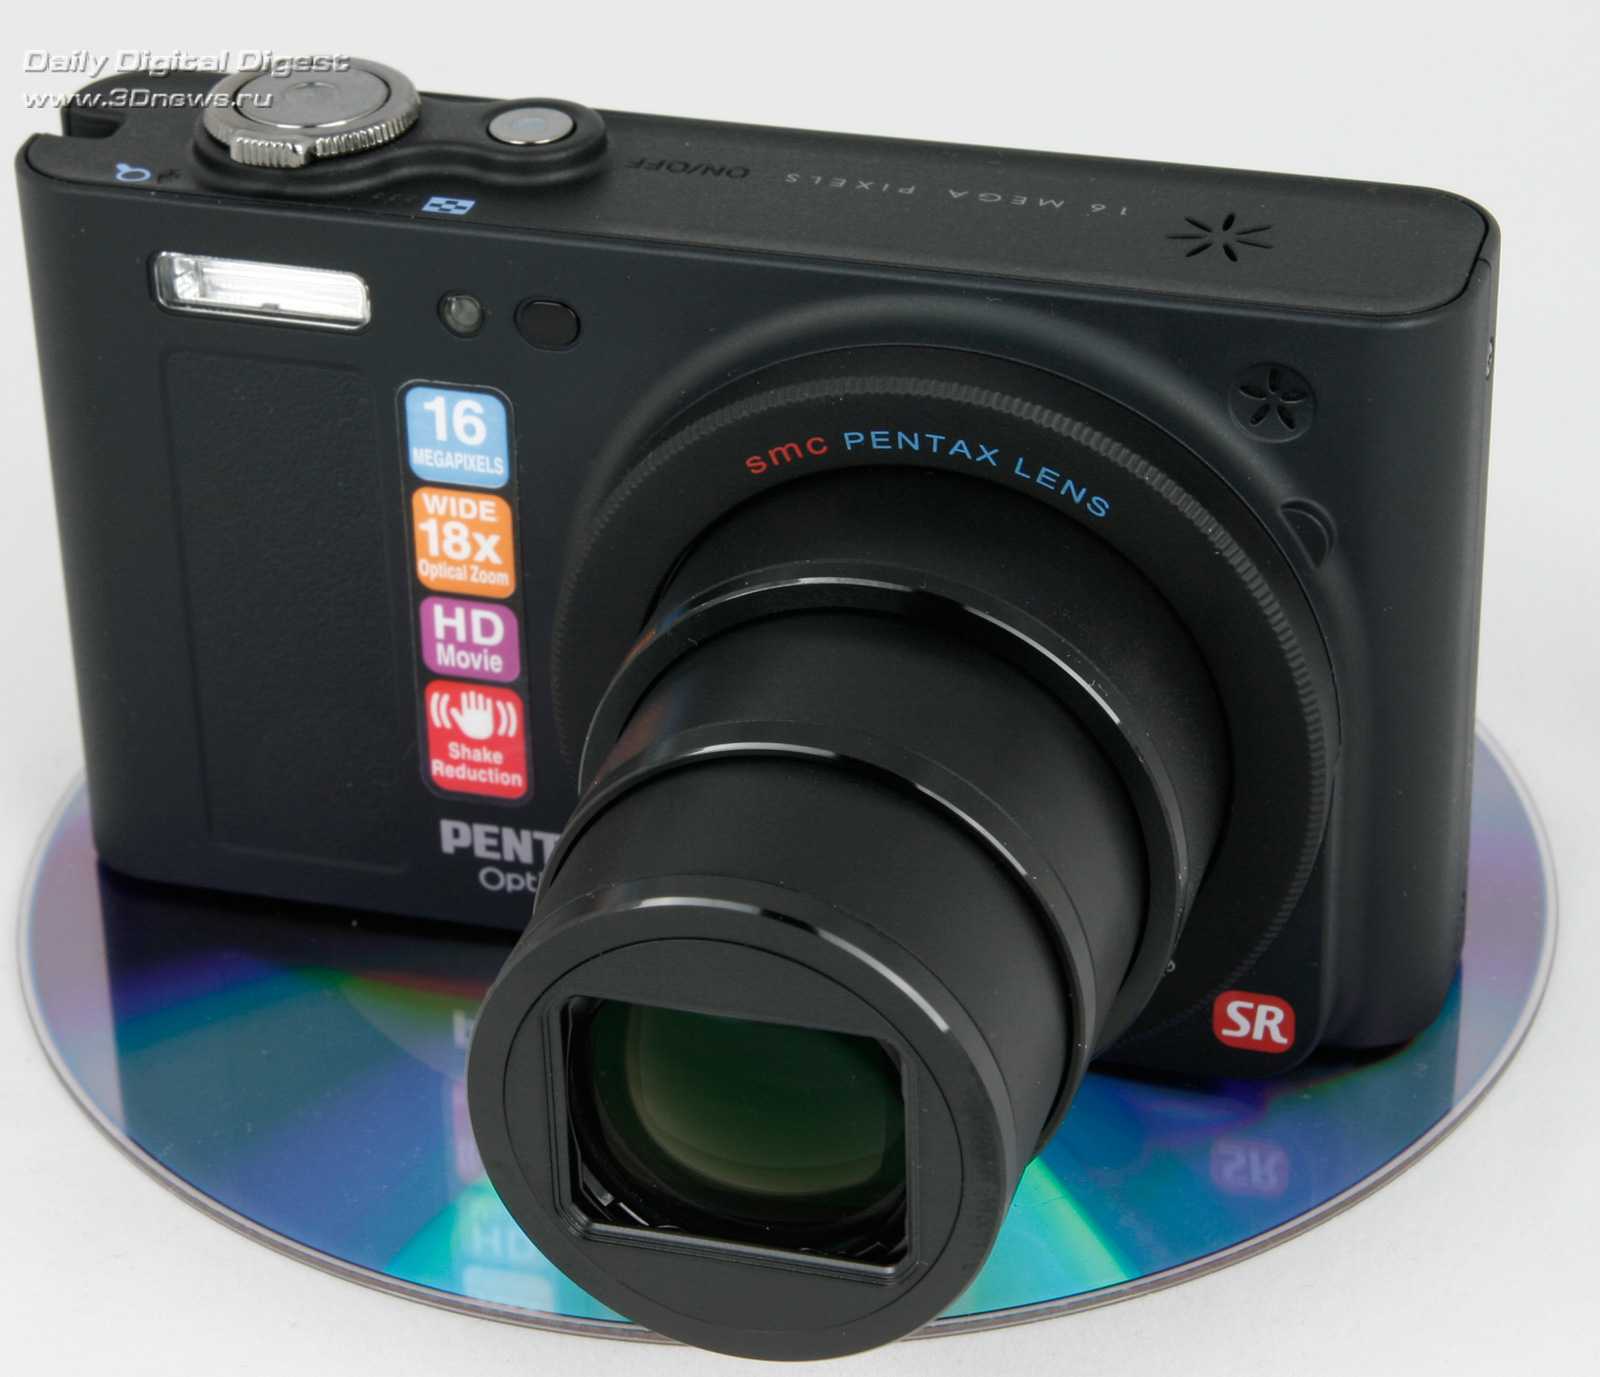 Цифровой фотоаппарат Pentax Optio RZ18 - подробные характеристики обзоры видео фото Цены в интернет-магазинах где можно купить цифровую фотоаппарат Pentax Optio RZ18